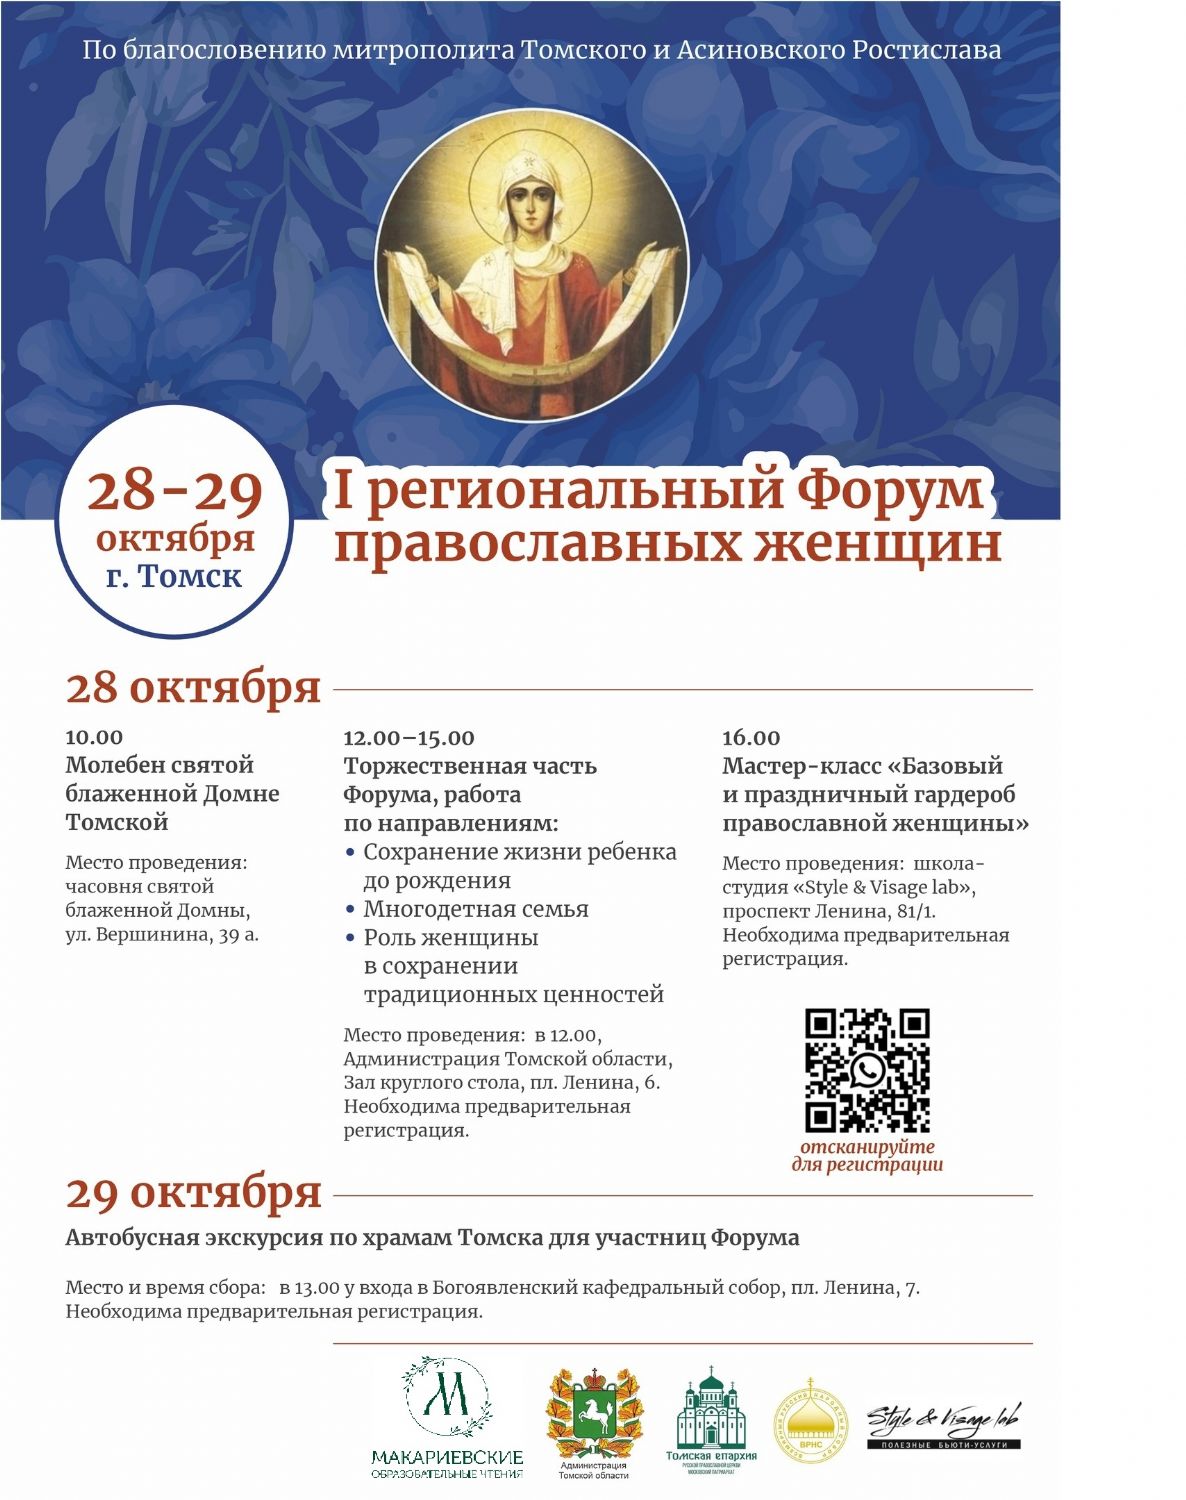 В Томске впервые пройдёт форум православных женщин